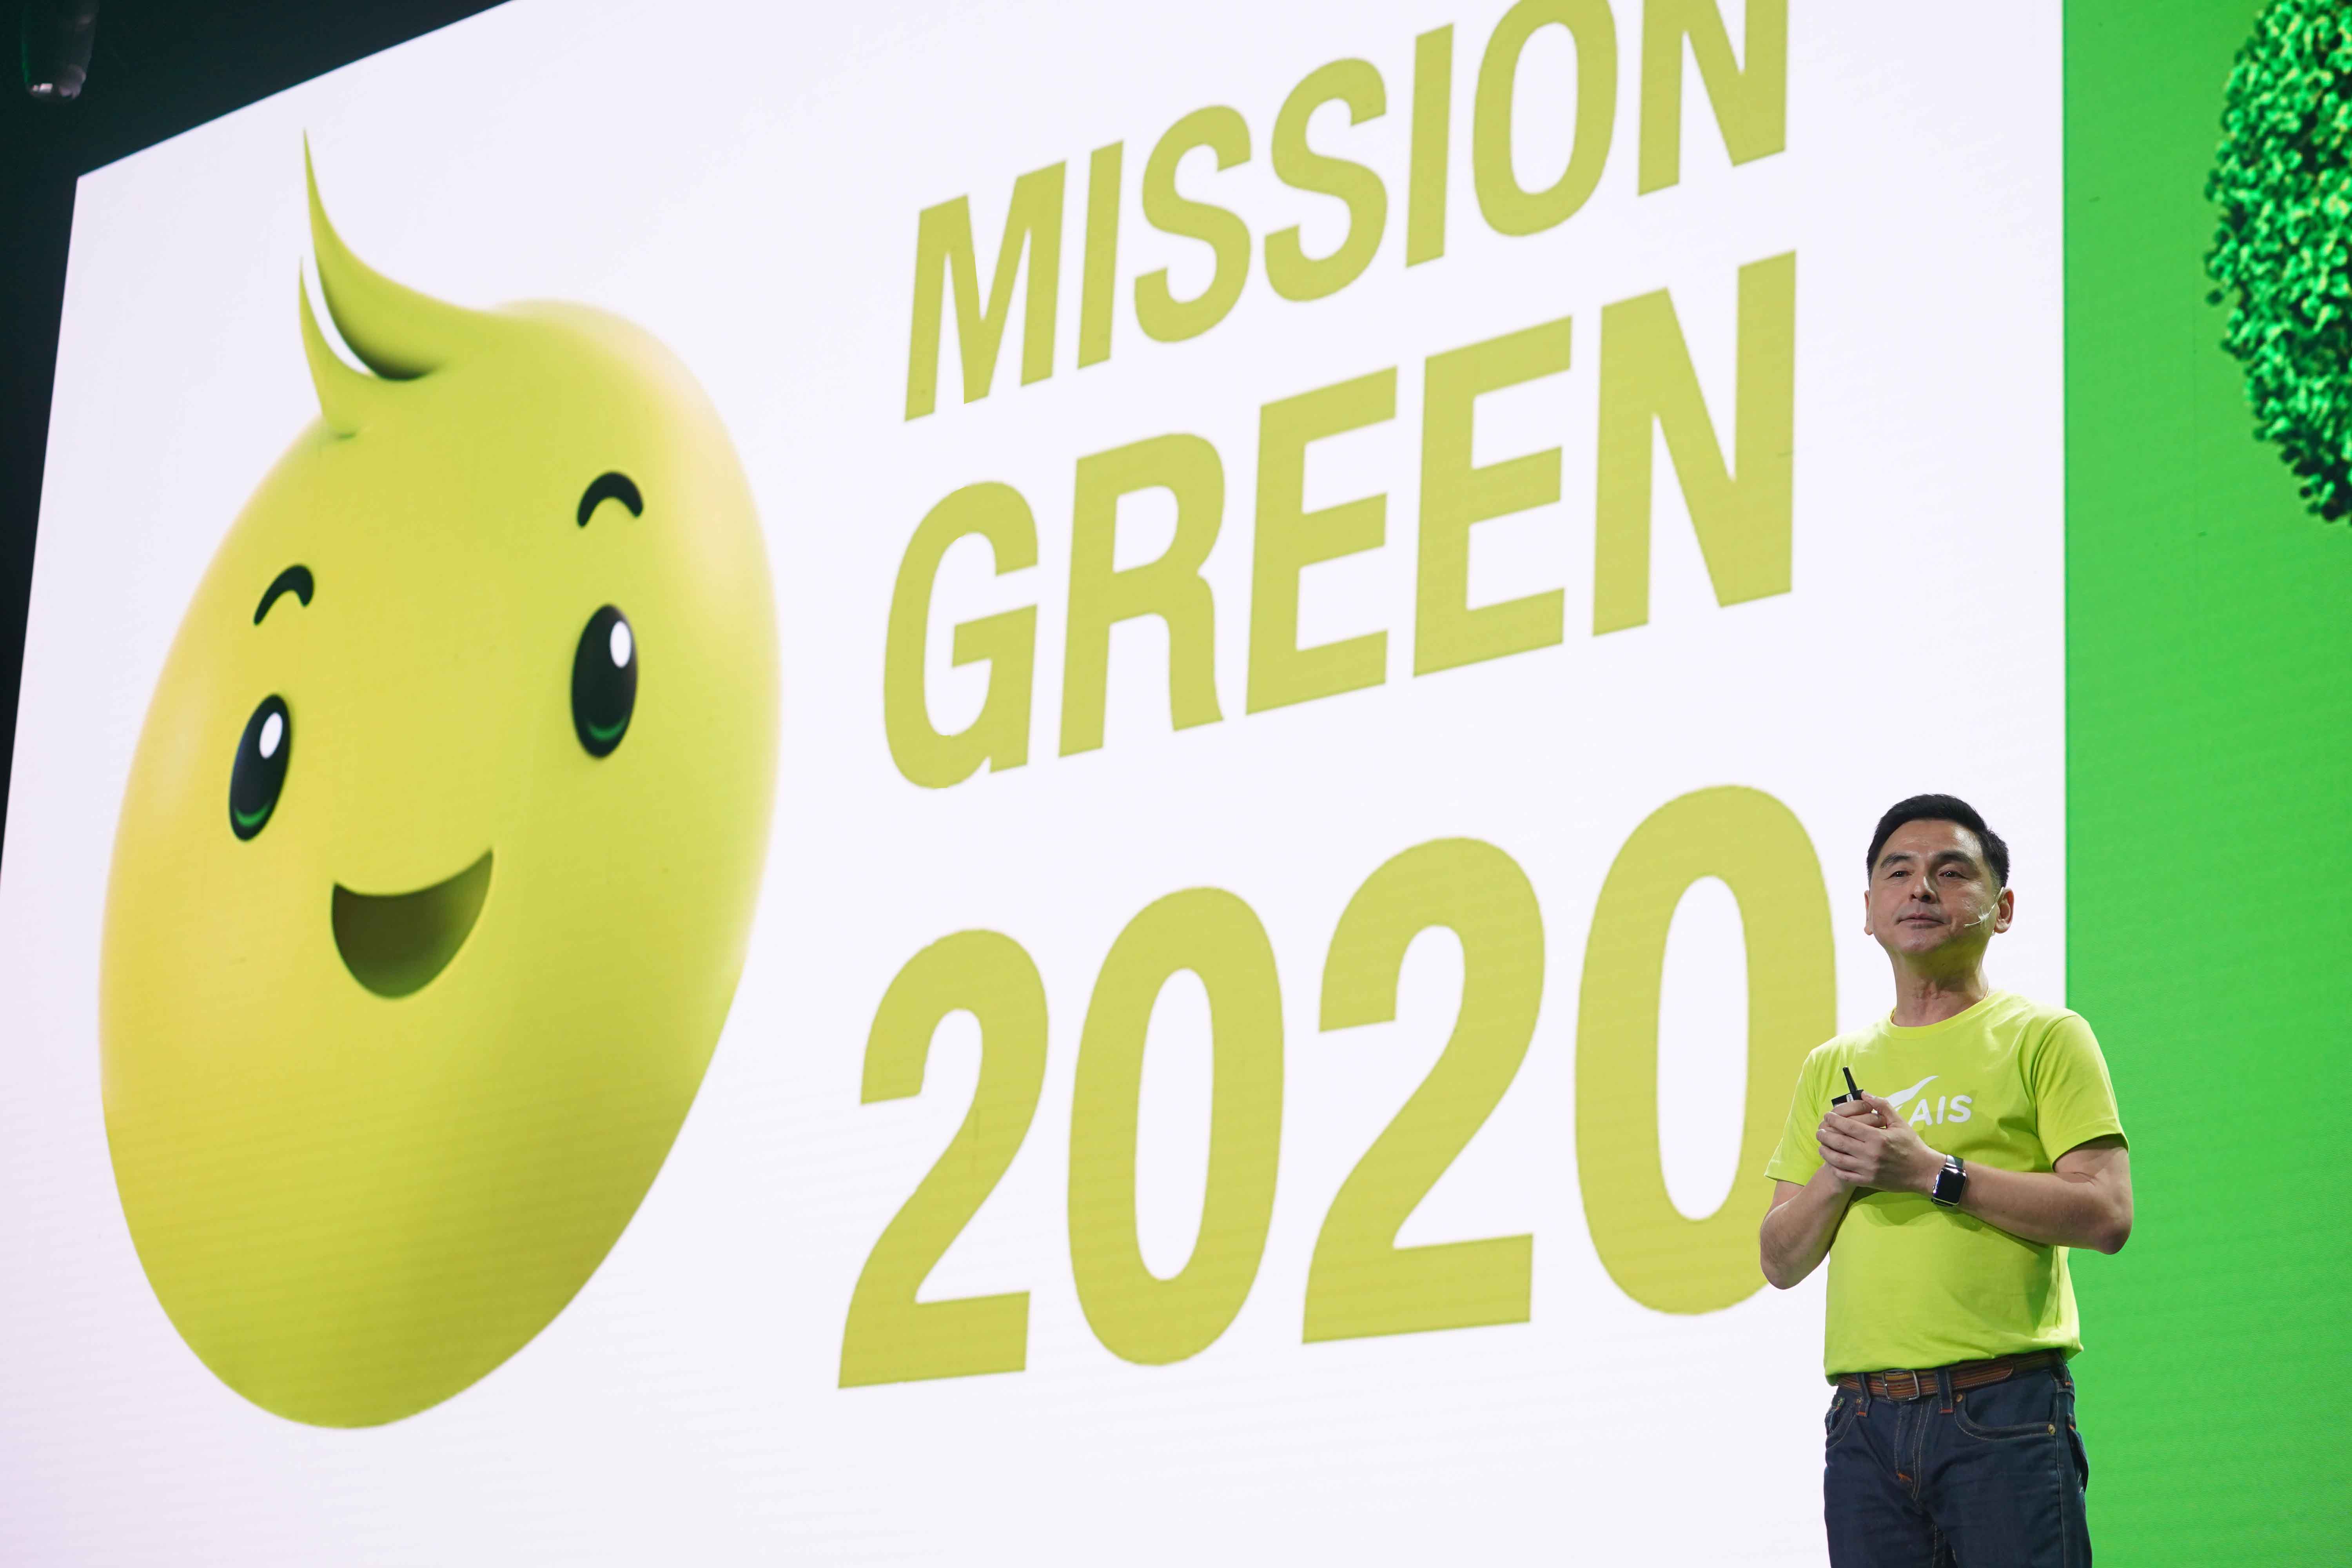 เอไอเอสเจ๋ง! เดินหน้าภารกิจ “Mission Green 2020” แกนกลางกำจัดขยะอิเล็กทรอนิกส์แบบยั่งยืน